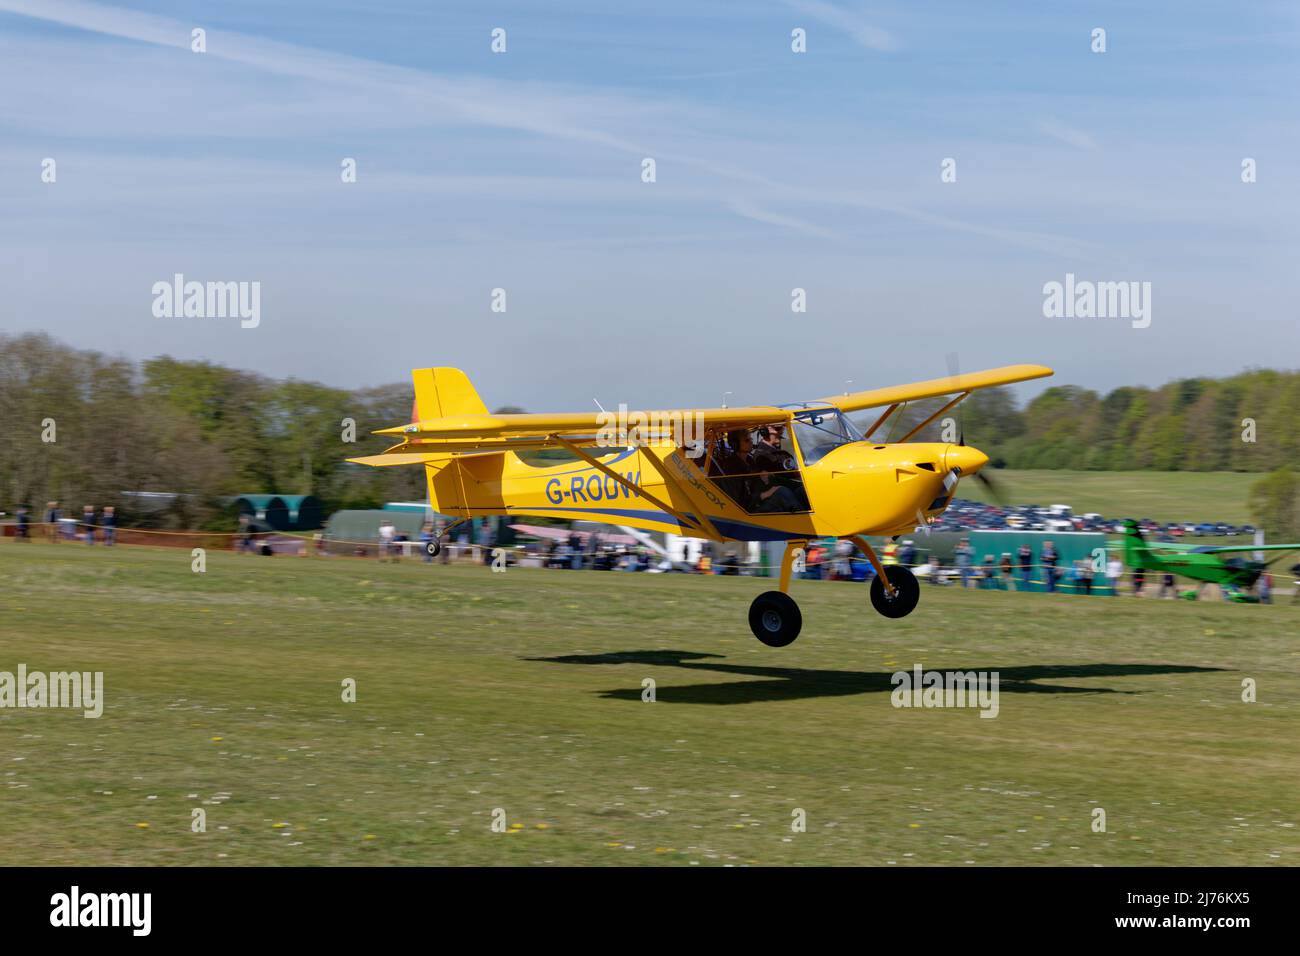 Avion de microlumière jaune vif Eurofox G-RODW arrive à l'aérodrome de Popham, dans le Hampshire, en Angleterre, pour assister à la rencontre annuelle des avions de microlumière Banque D'Images